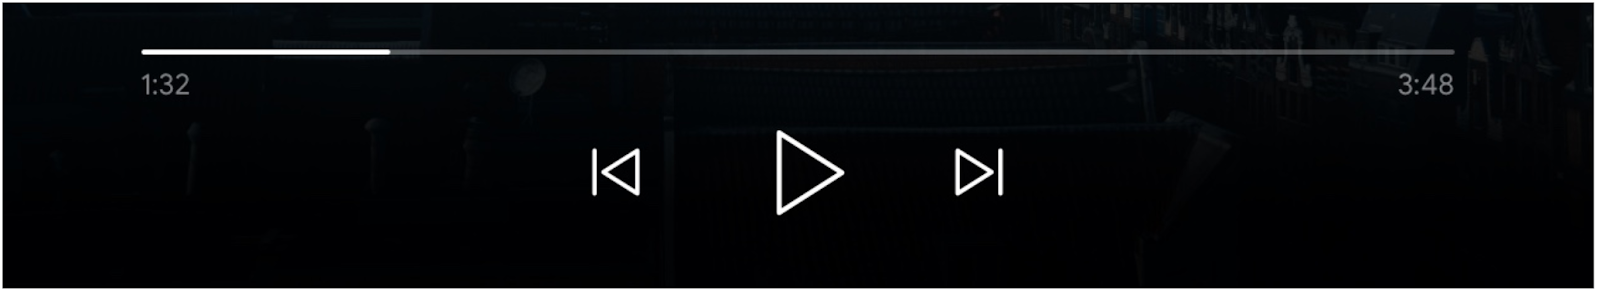 Obraz elementów sterujących odtwarzaczem: pasek postępu, przycisk „Odtwórz” oraz przyciski „Kolejka” i „Kolejka”